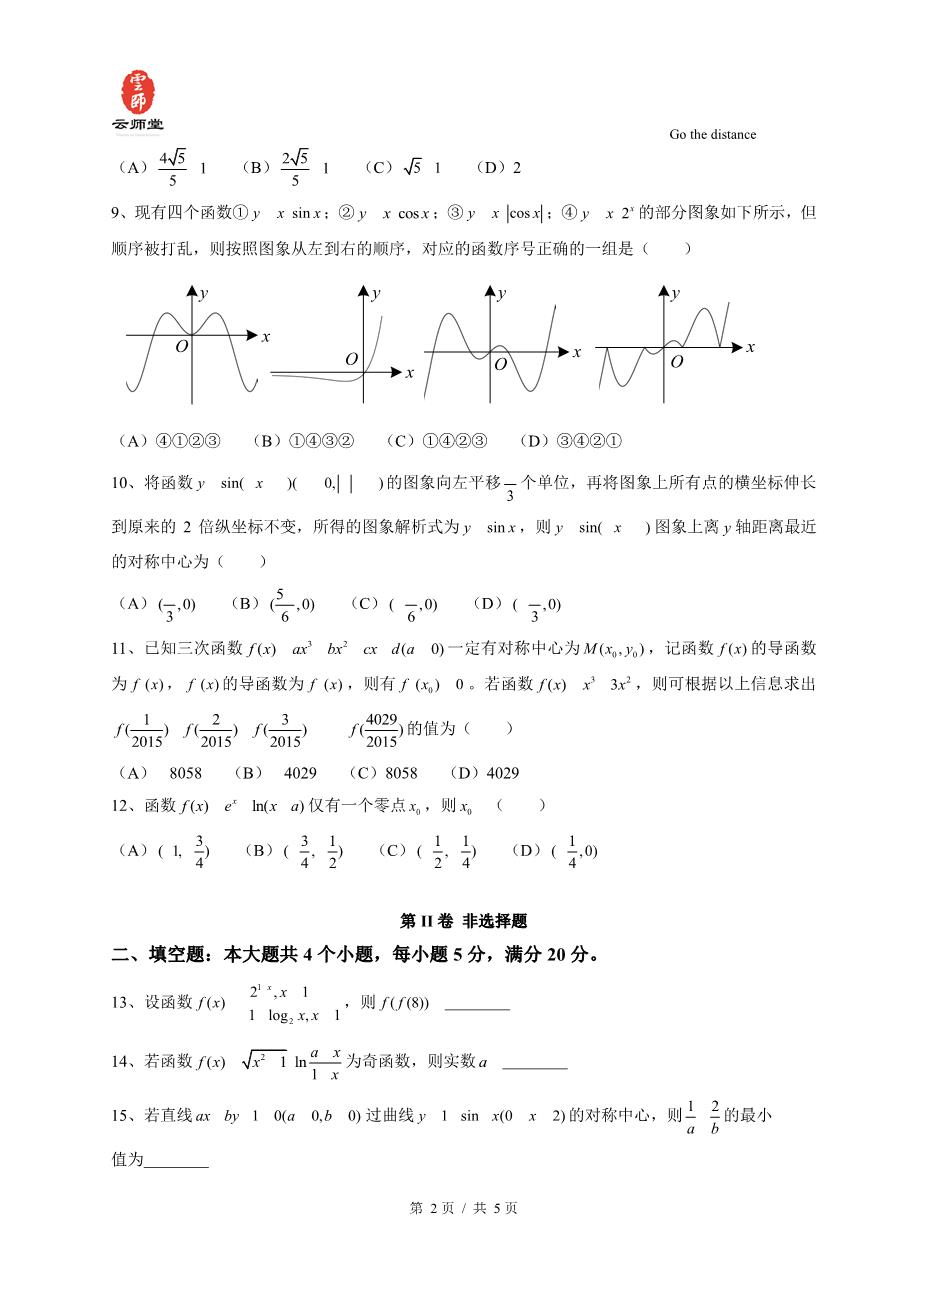 高三年级一模考试数学【理】试题.pdf - 善学网_www.shanxuedoc.com